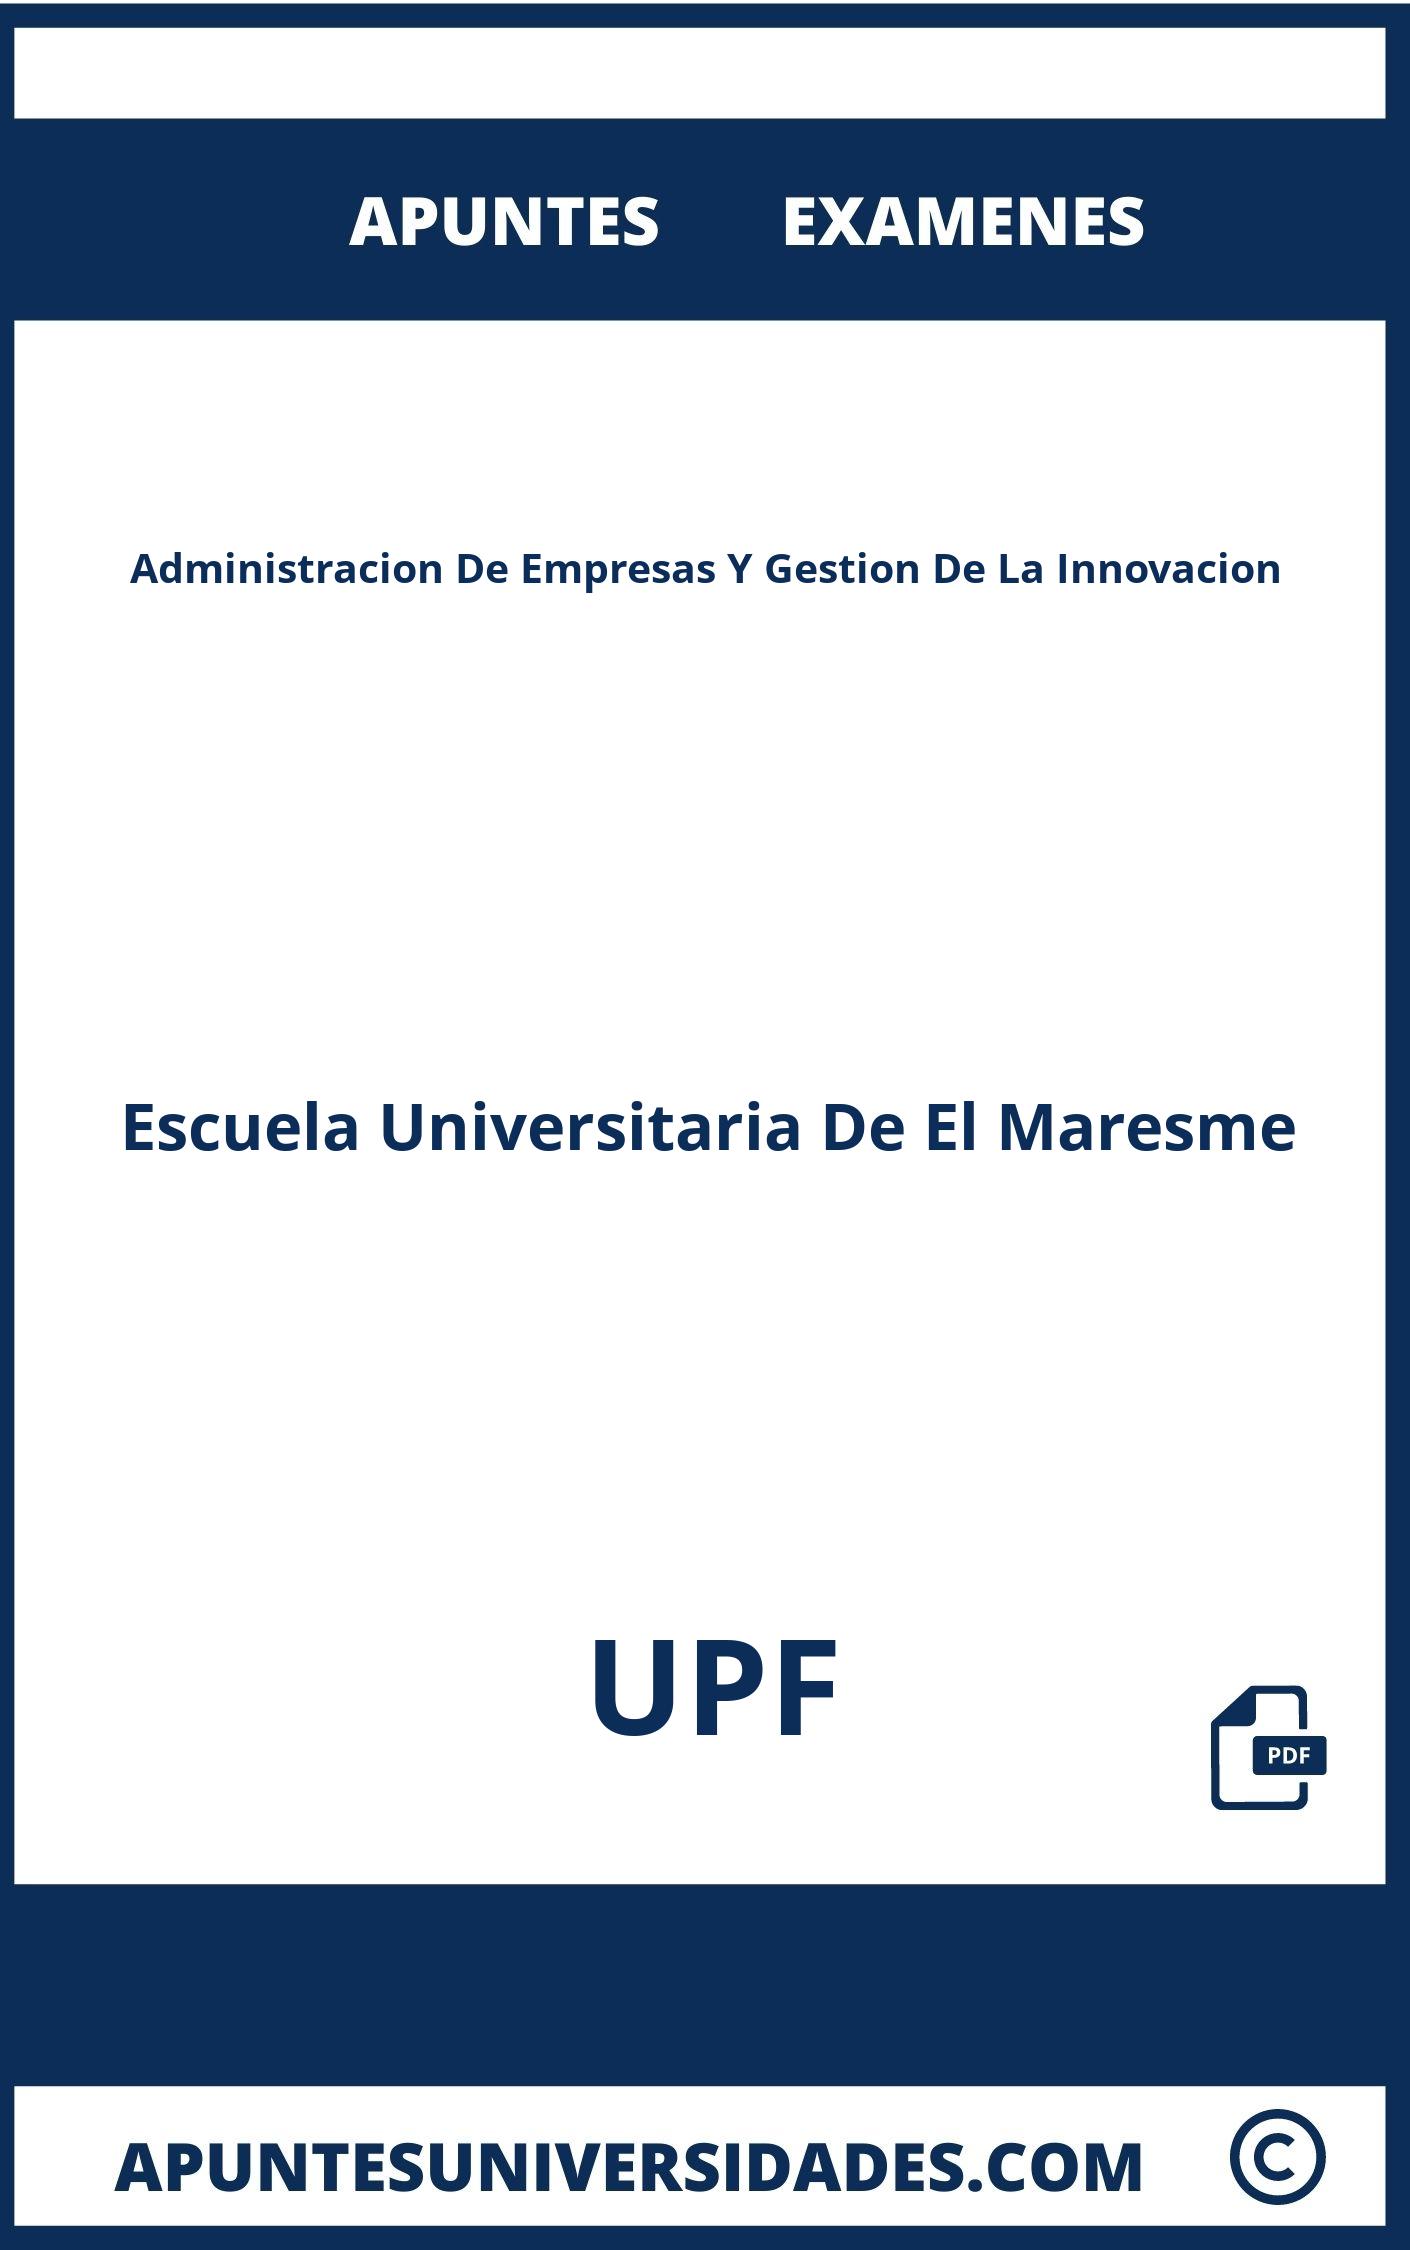 Apuntes y Examenes Administracion De Empresas Y Gestion De La Innovacion UPF